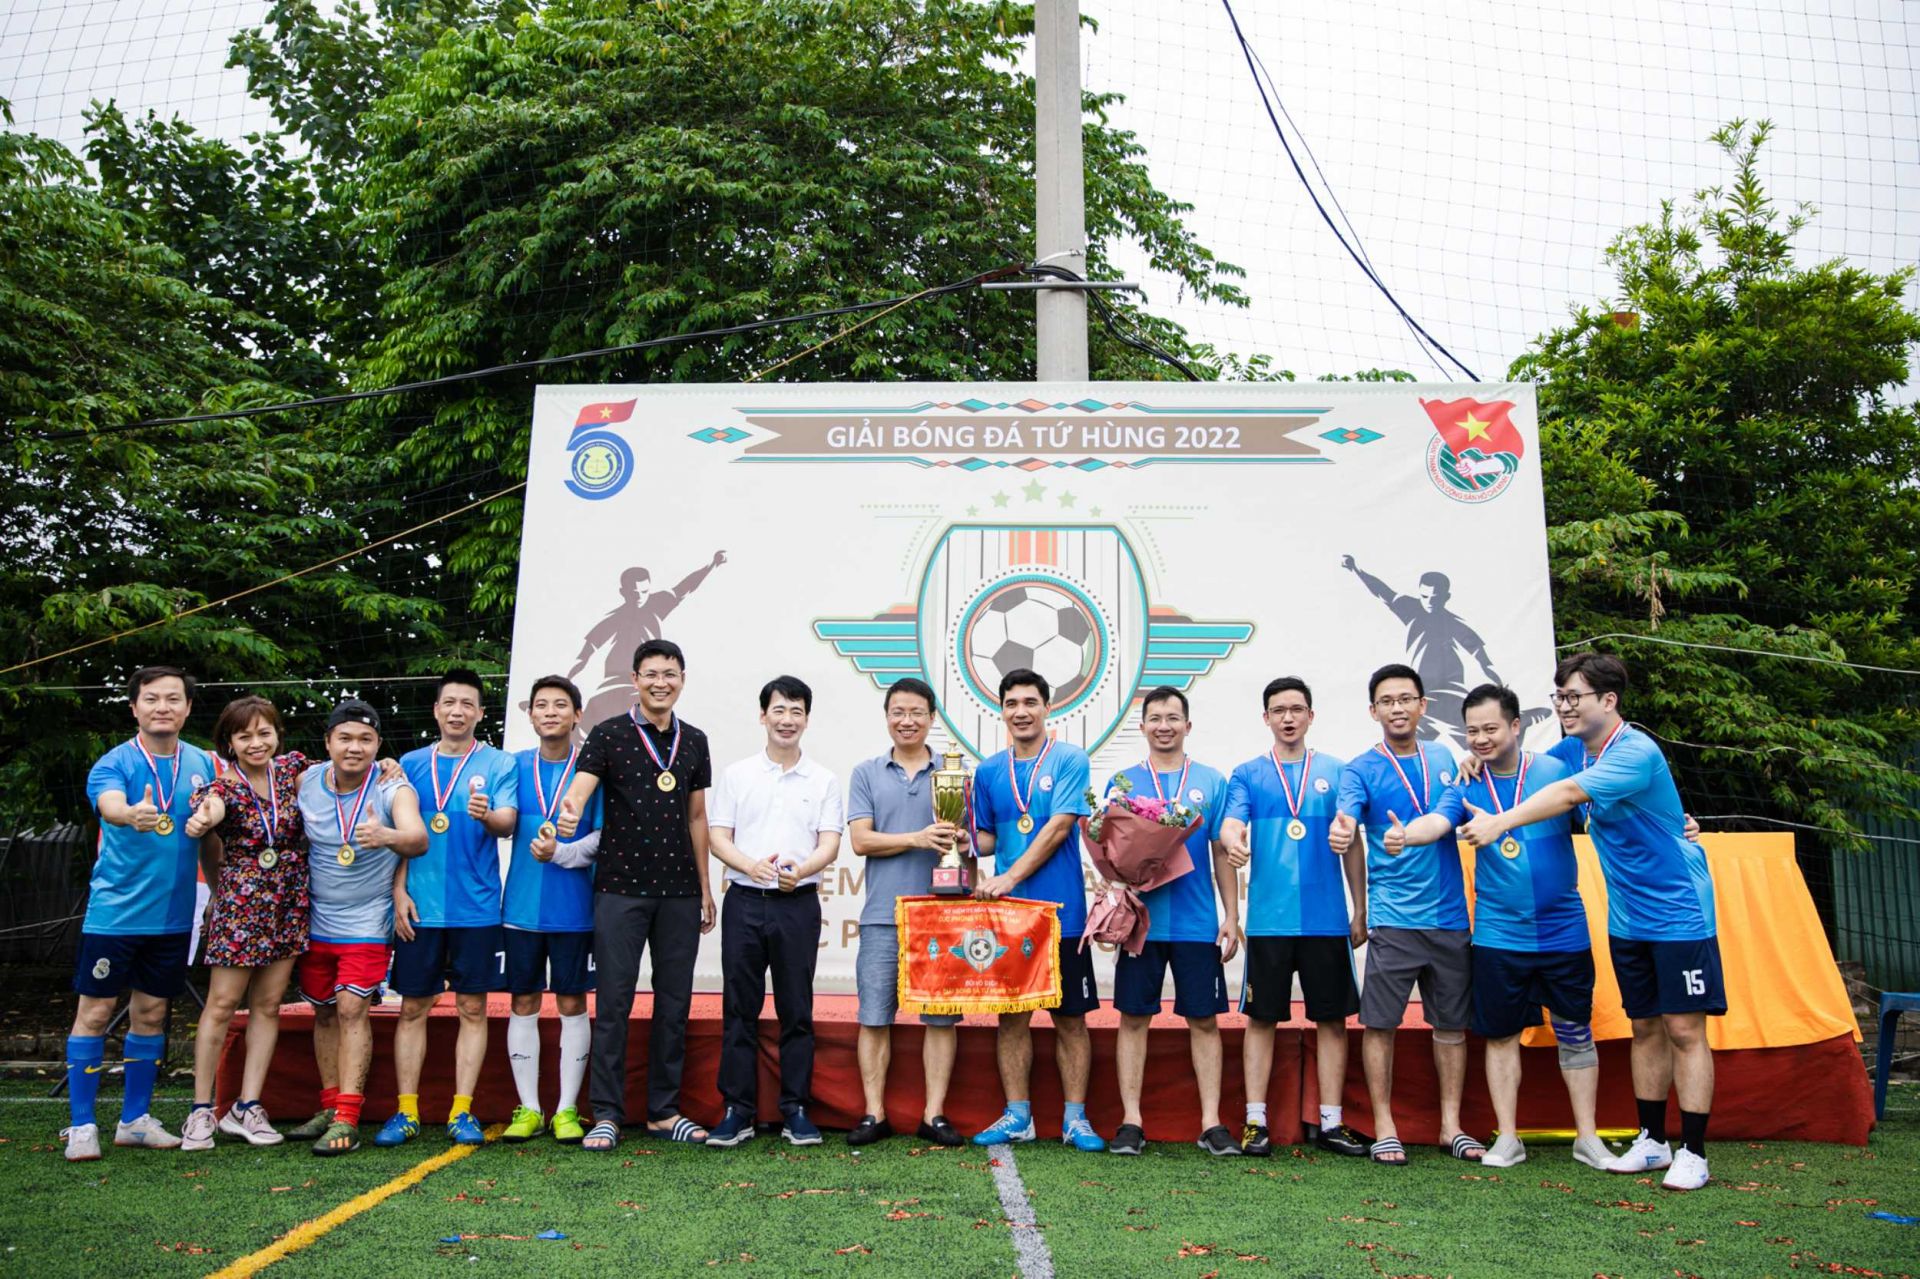 Ngày 20/8/2022, Giải bóng đá nam Tứ Hùng do Chi đoàn Cục Phòng vệ thương mại (Bộ Công Thương) đăng cai tổ chức đã diễn ra tại sân bóng Đầm Hồng 2, Hà Nội